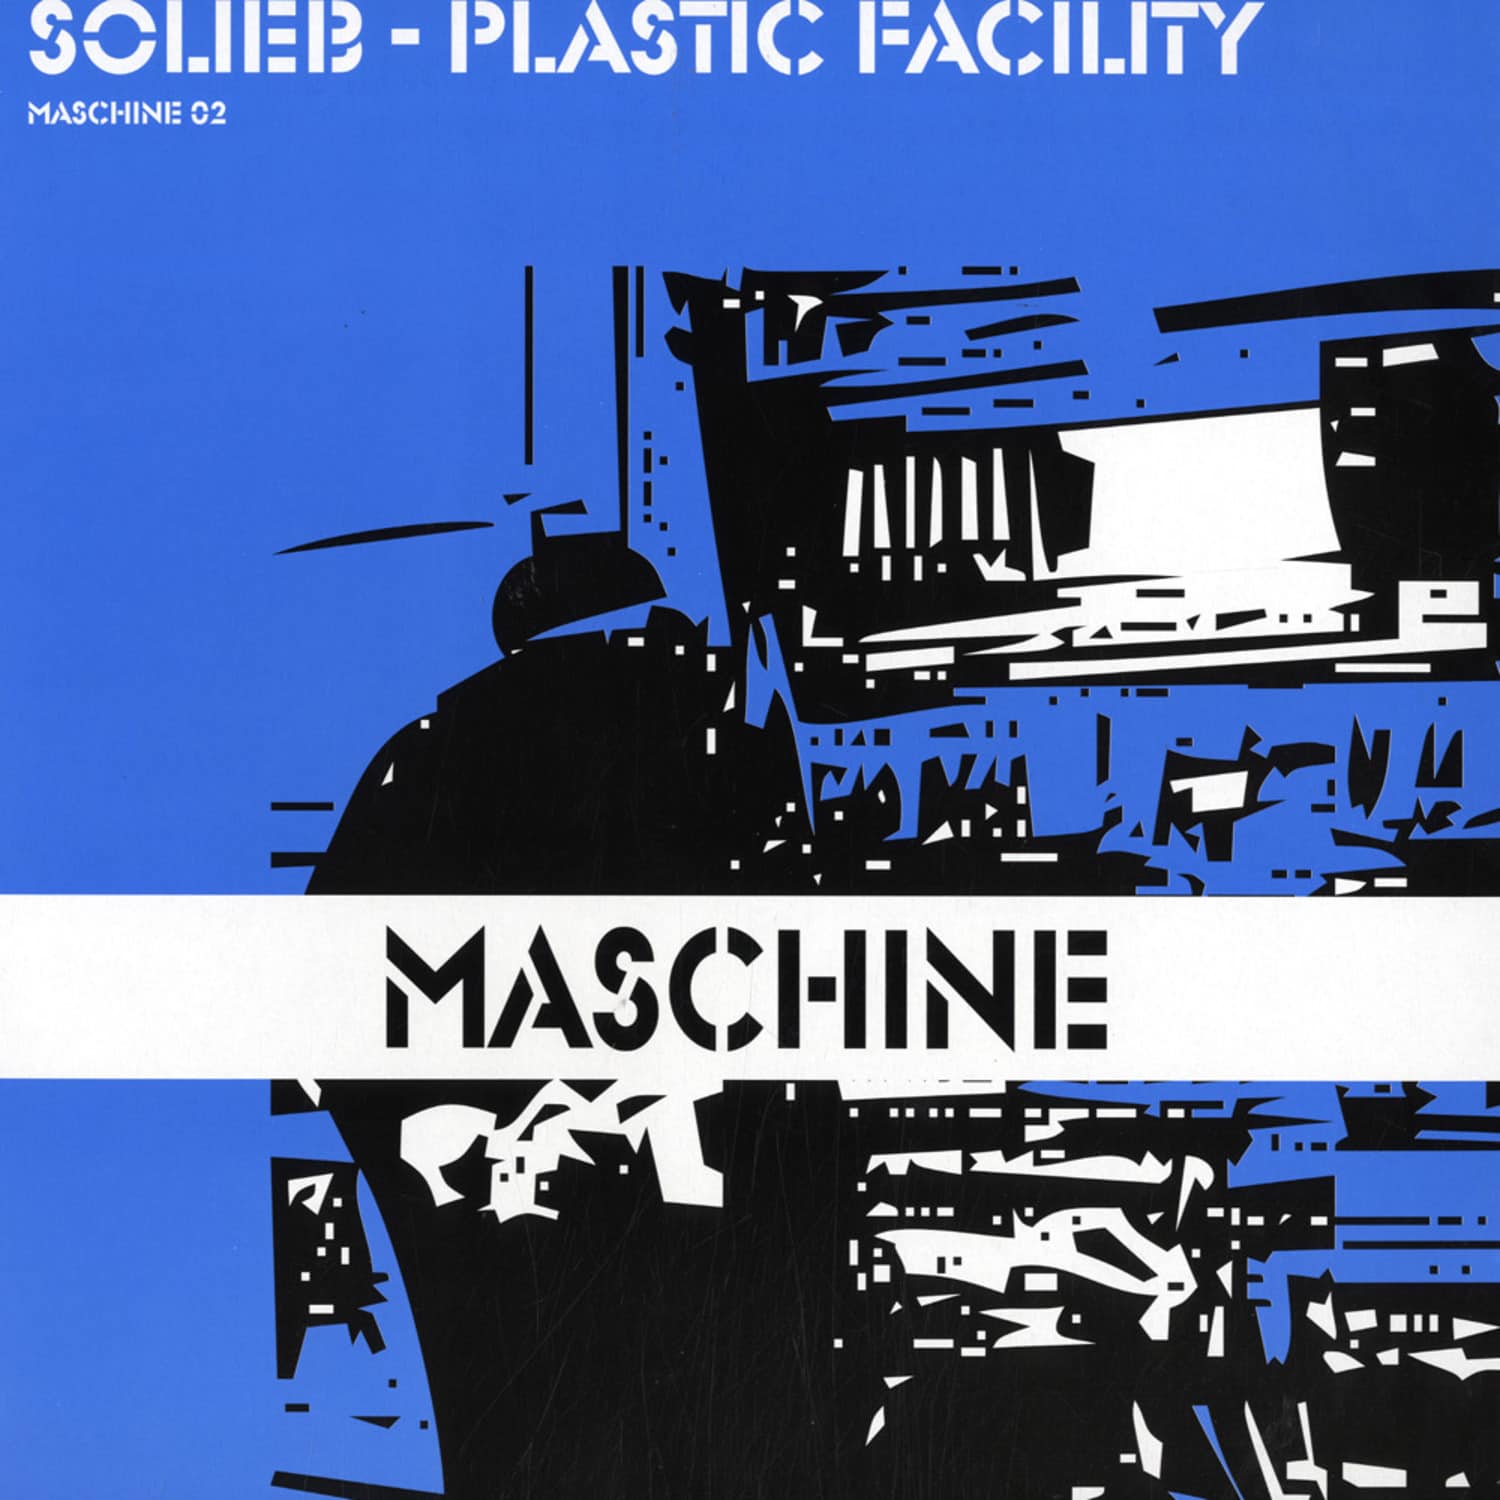 Solieb  - PLASTIC FACILITY